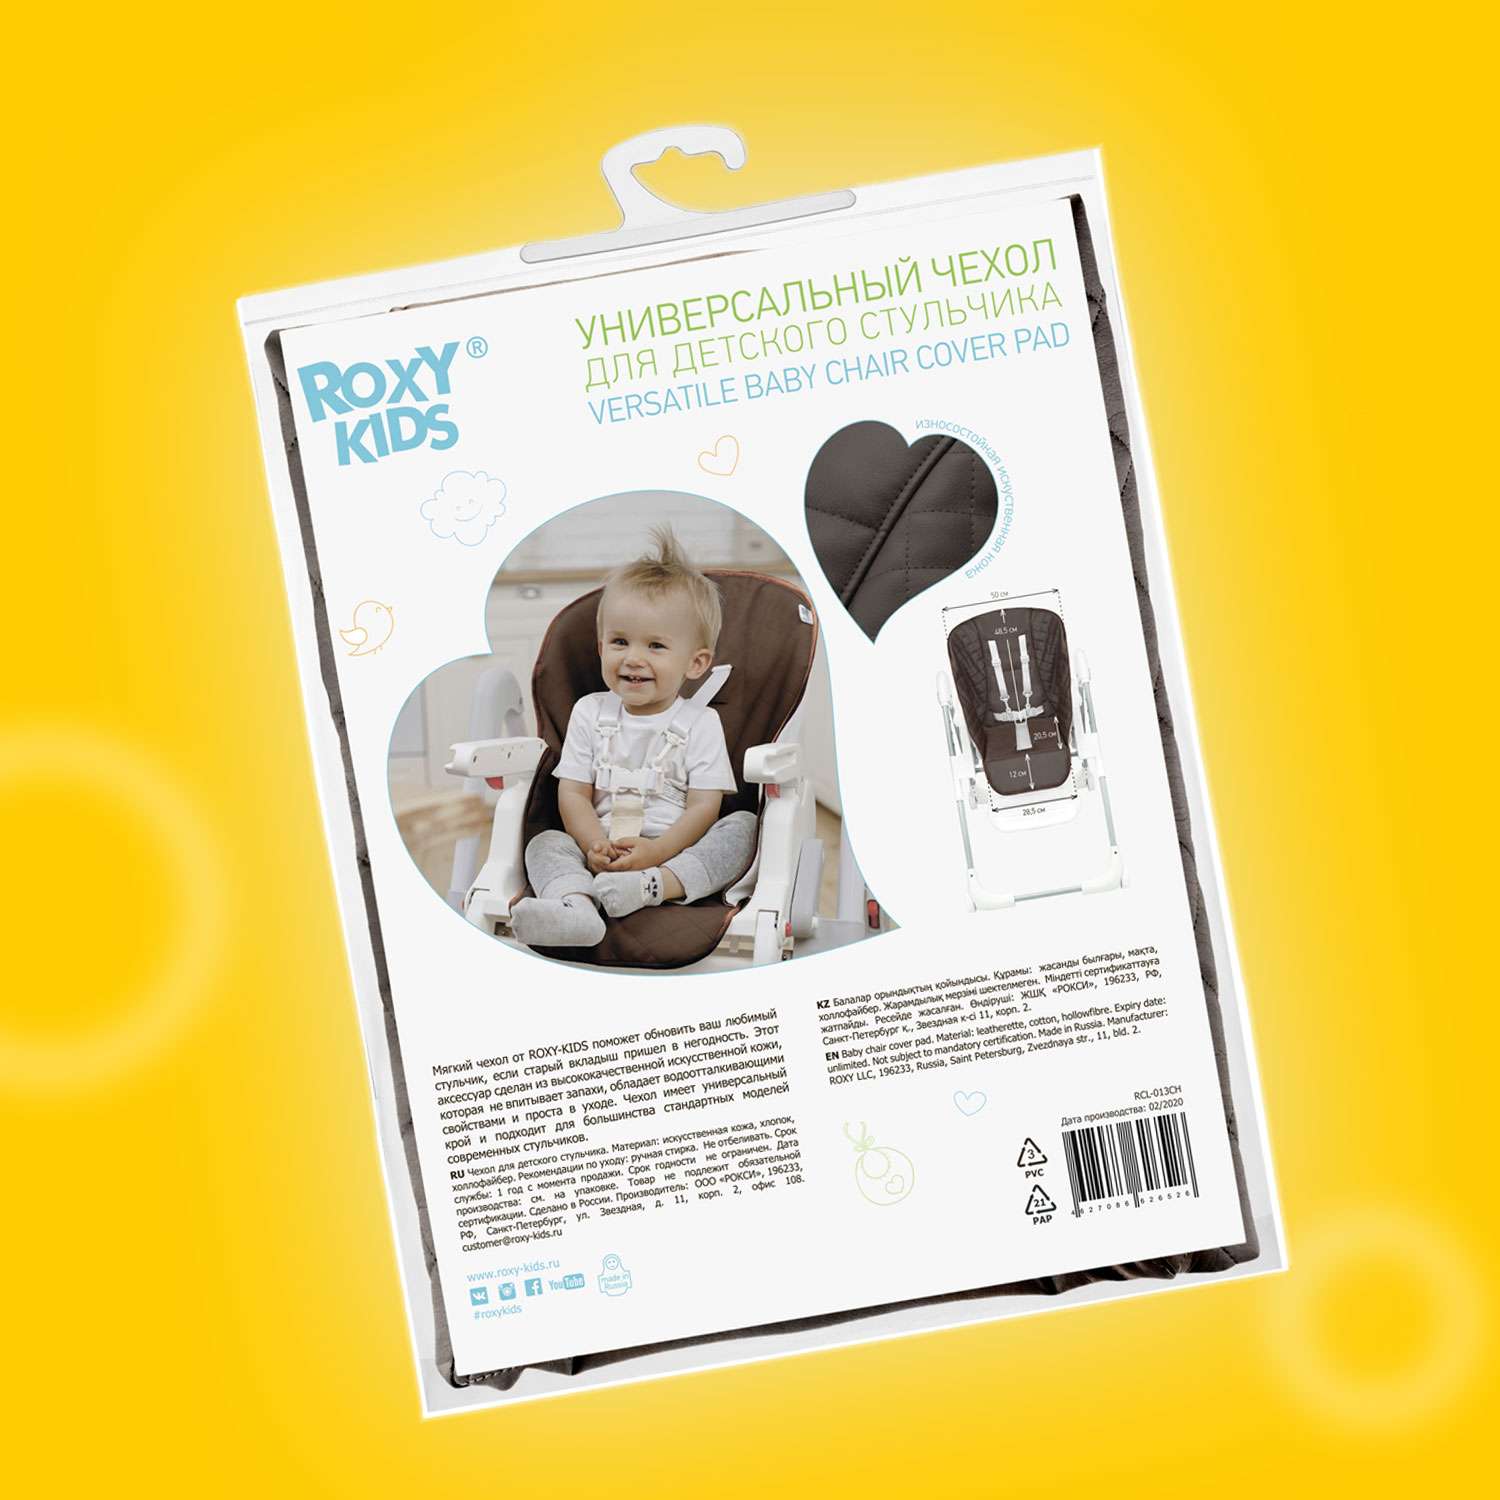 Чехол универсальный ROXY-KIDS на детский стульчик для кормления шоколадный - фото 7